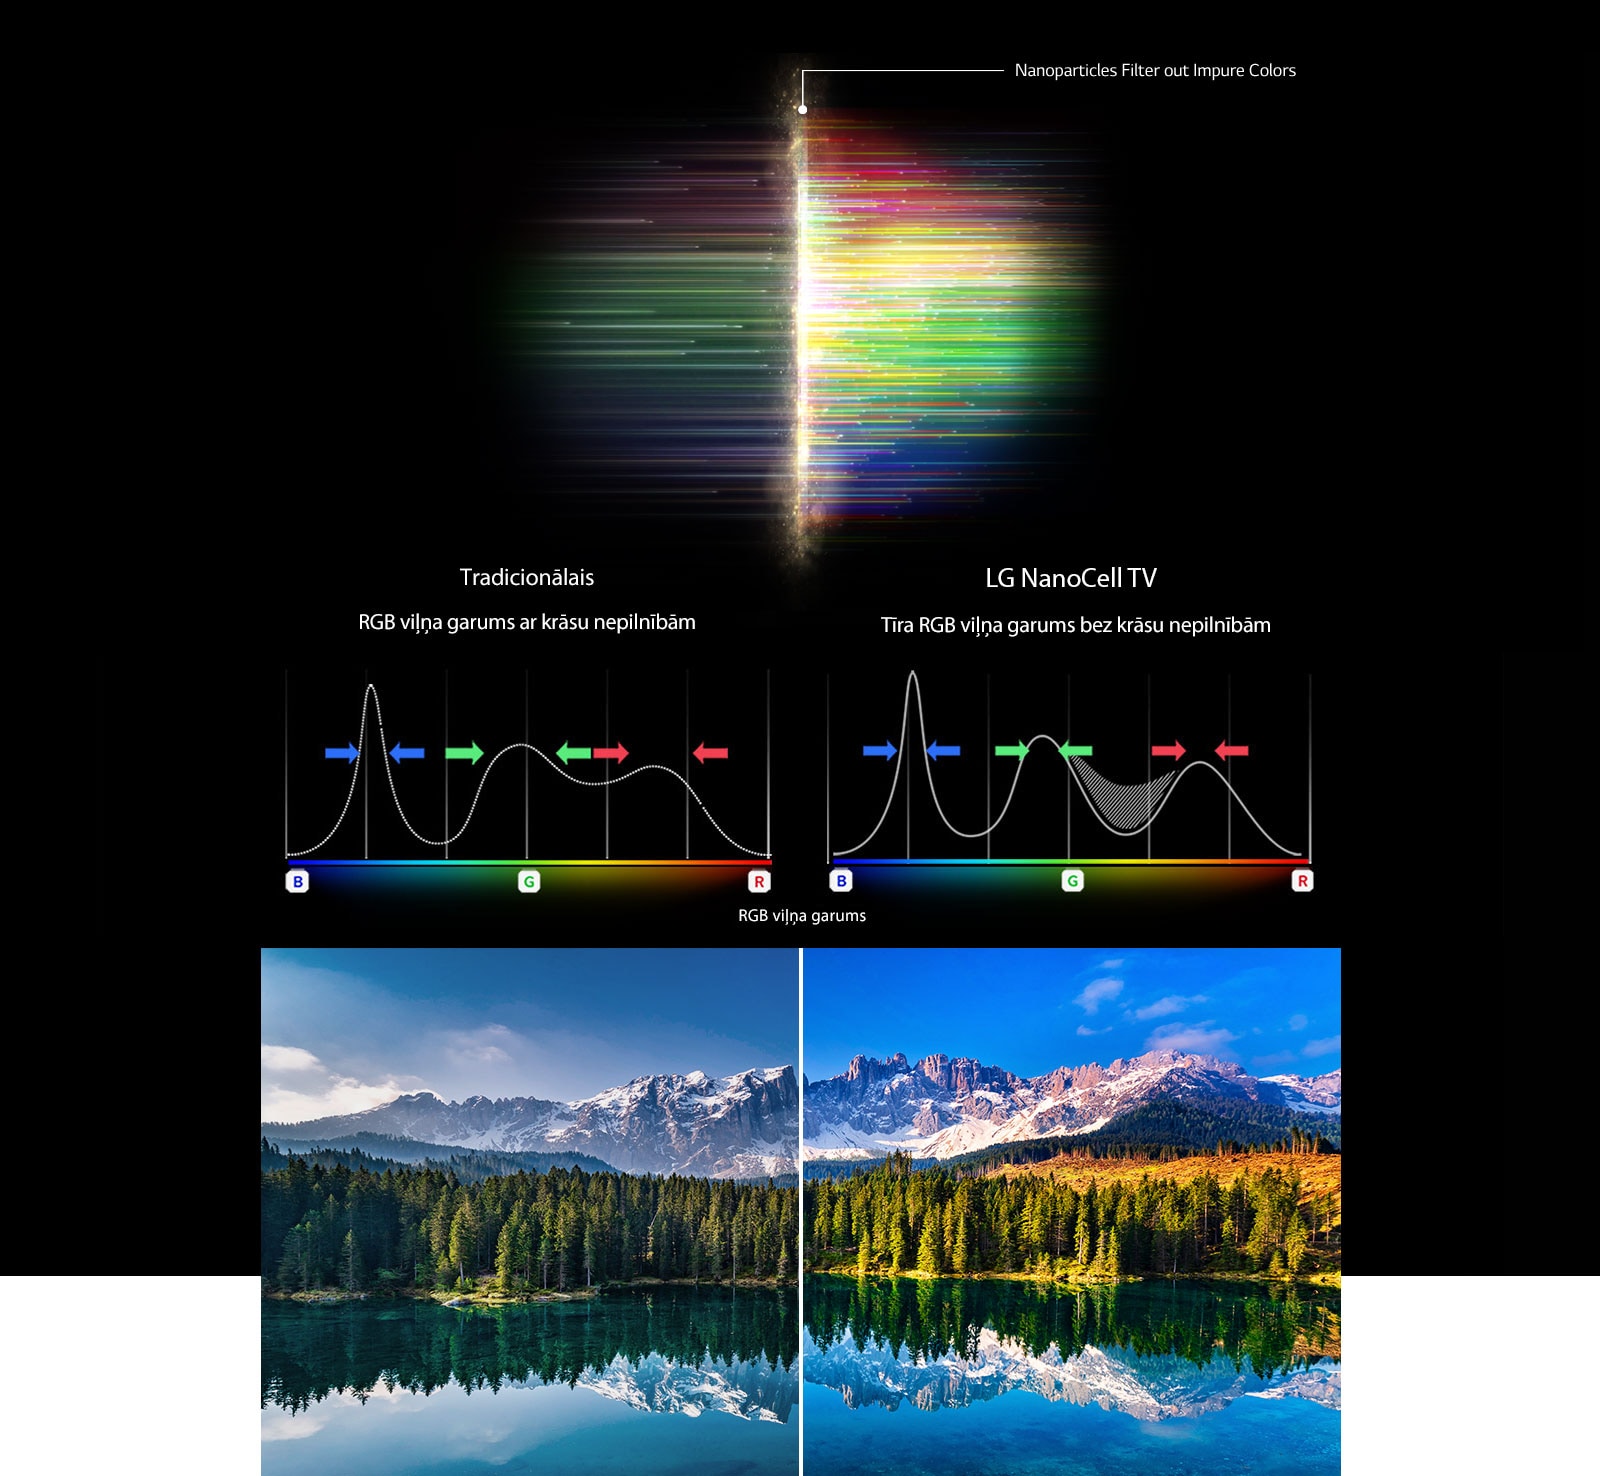 Grafico dello spettro RGB che mostra il colore sbiadito e il filtro delle immagini e il confronto della purezza del colore tra la tecnologia tradizionale e NanoCell